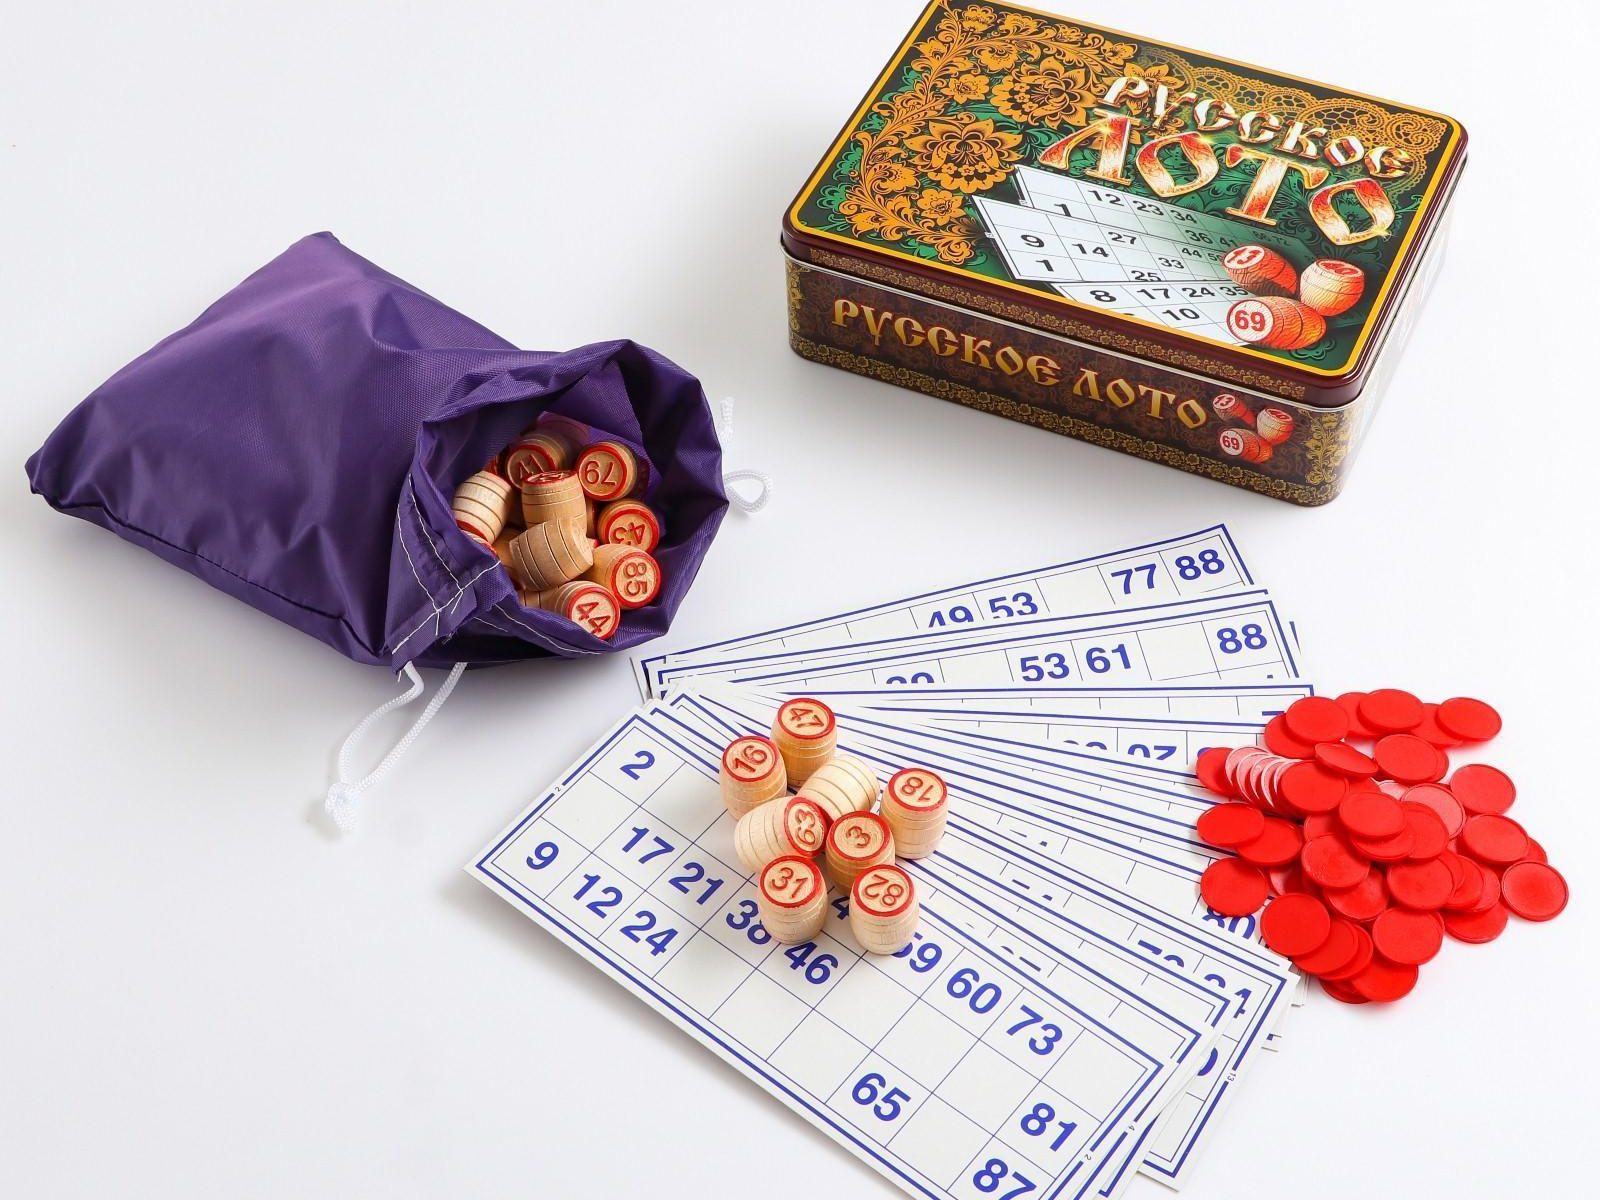 Lotto in wooden box Bingo Loto Russian game 